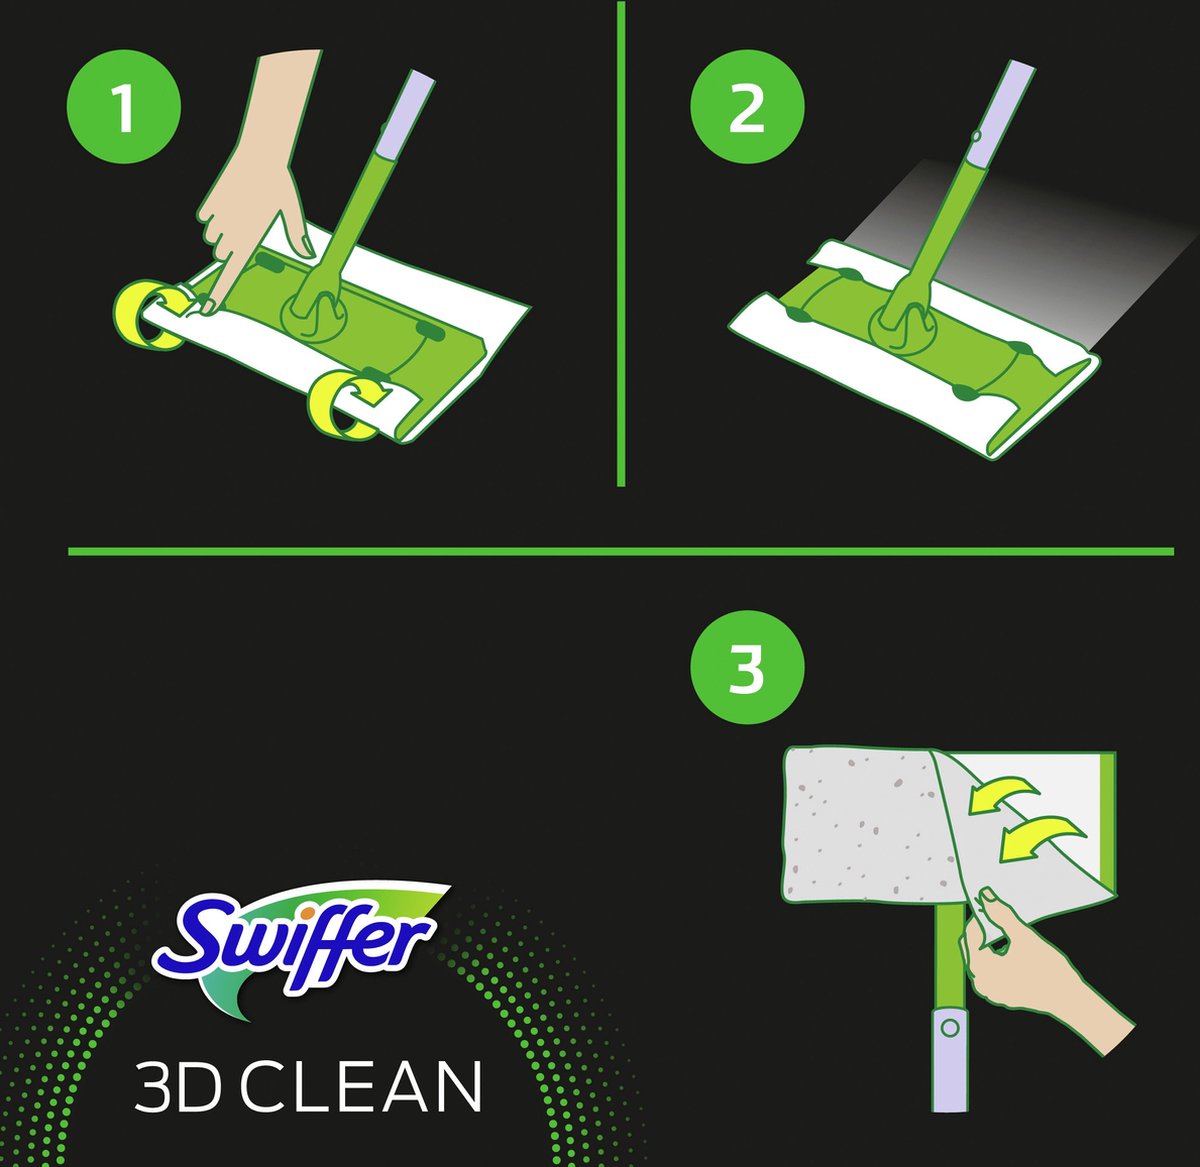 Swiffer Dry 3D Clean recharge chiffon de sol 7 pièces